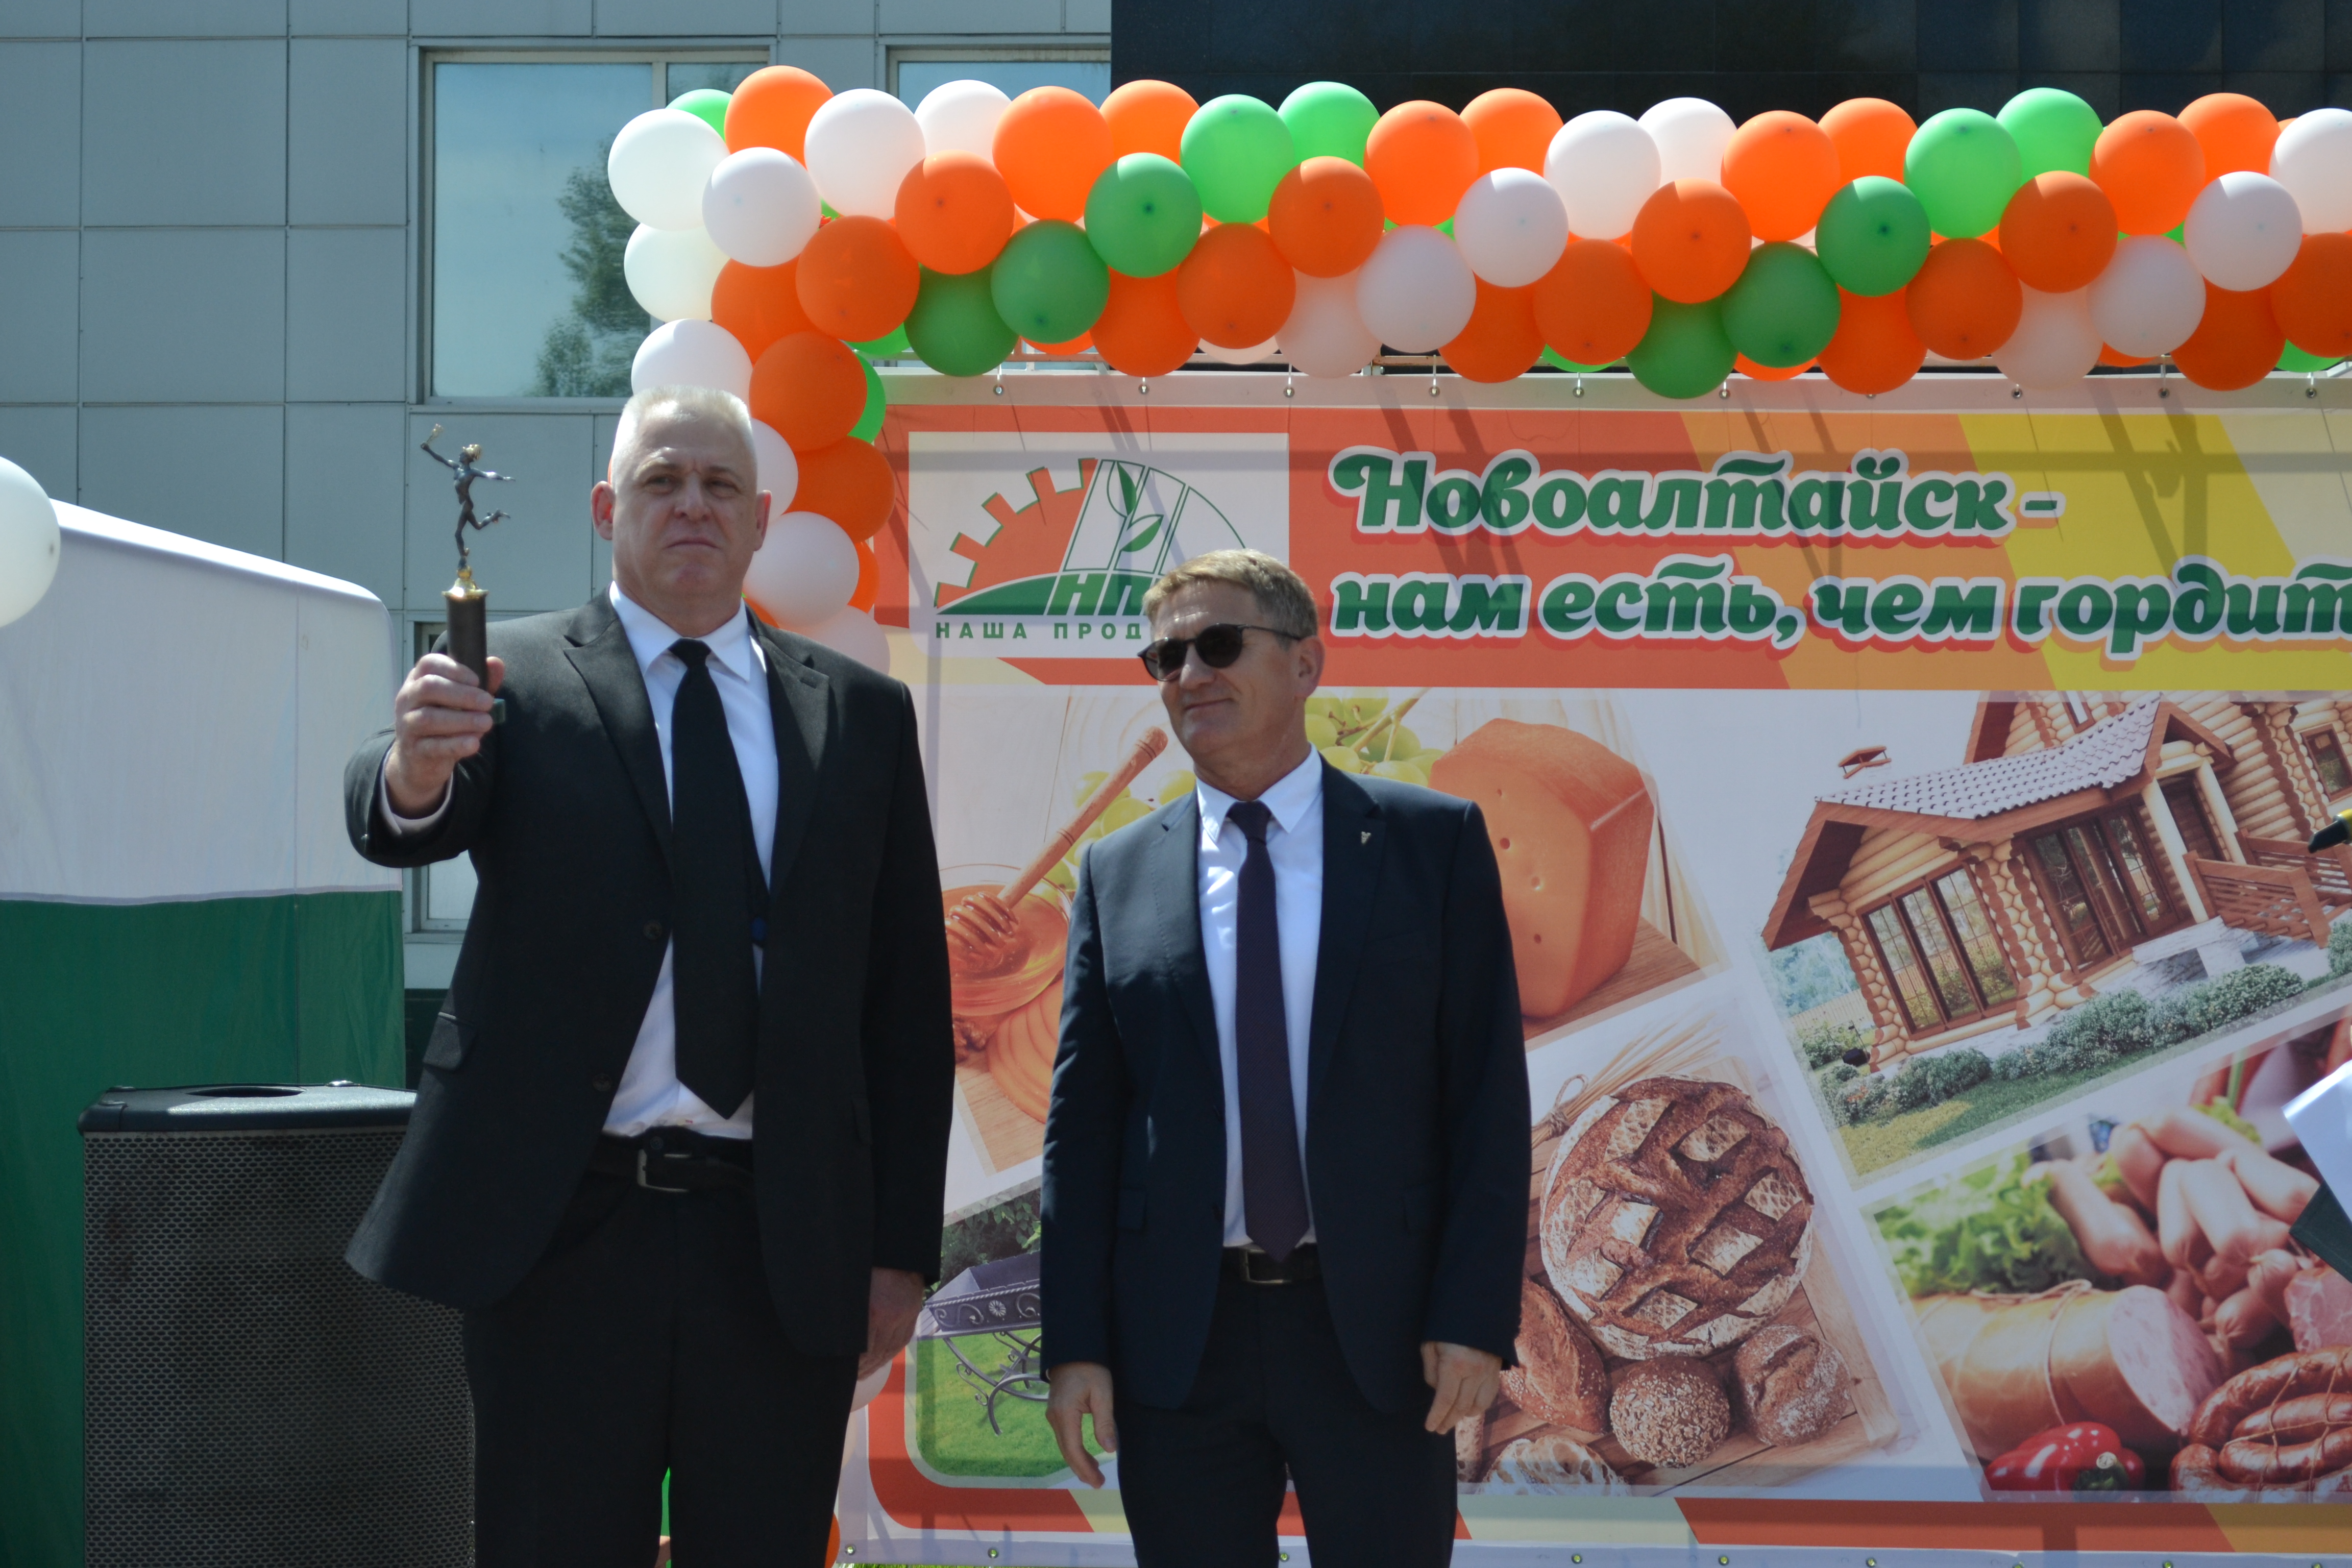 Глава города Новоалтайска Владимир Бодунов и Президент ТПП Алтайского края Борис Чесноков